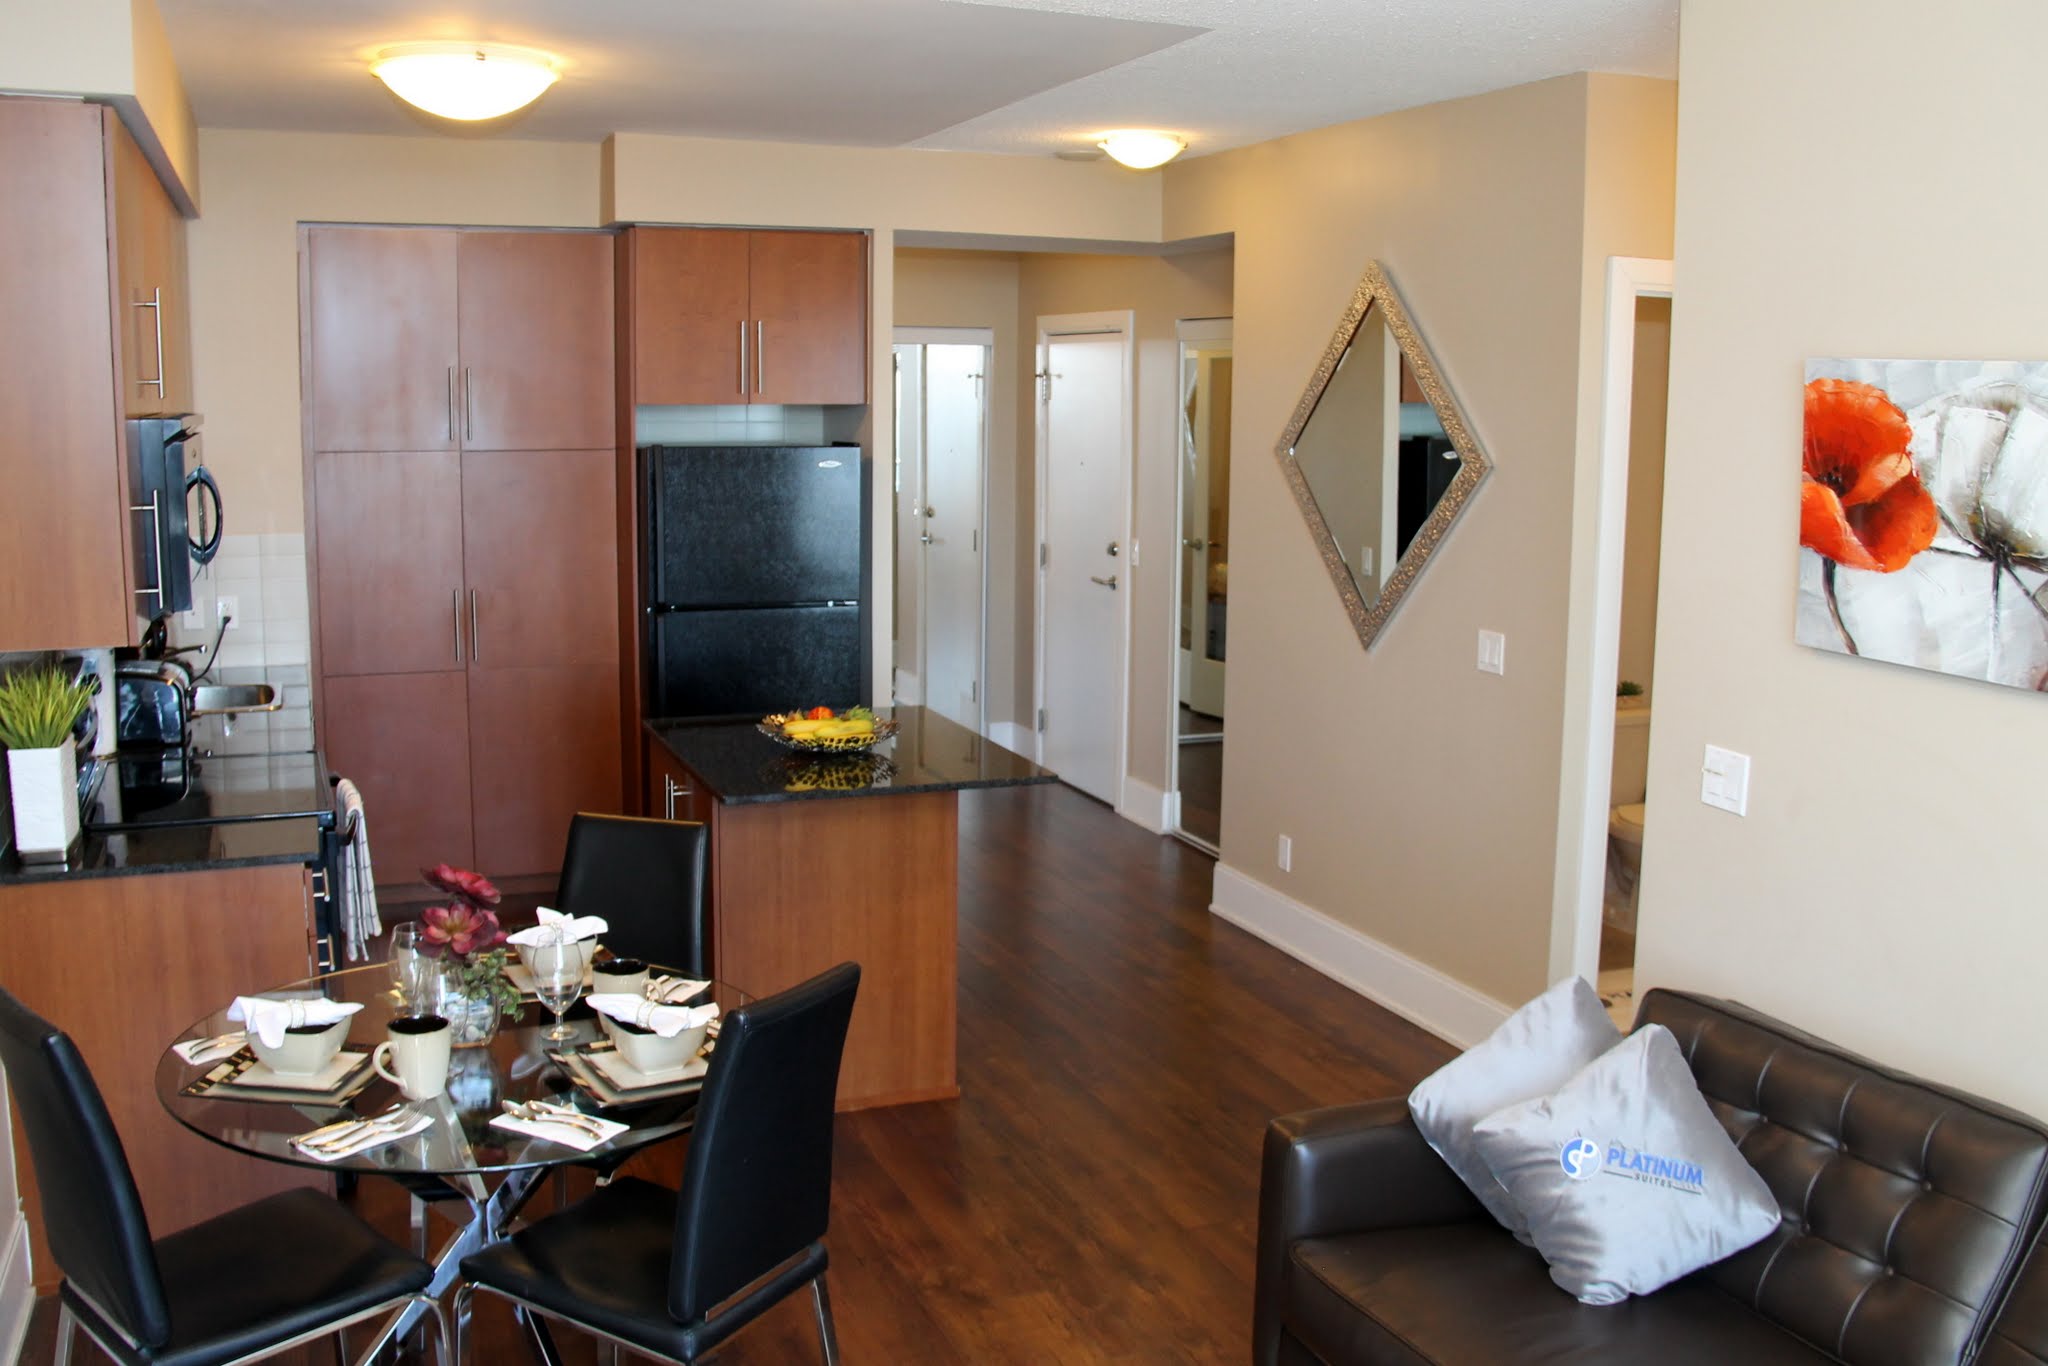 Platinum Suites - Furnished Apartments Mississauga